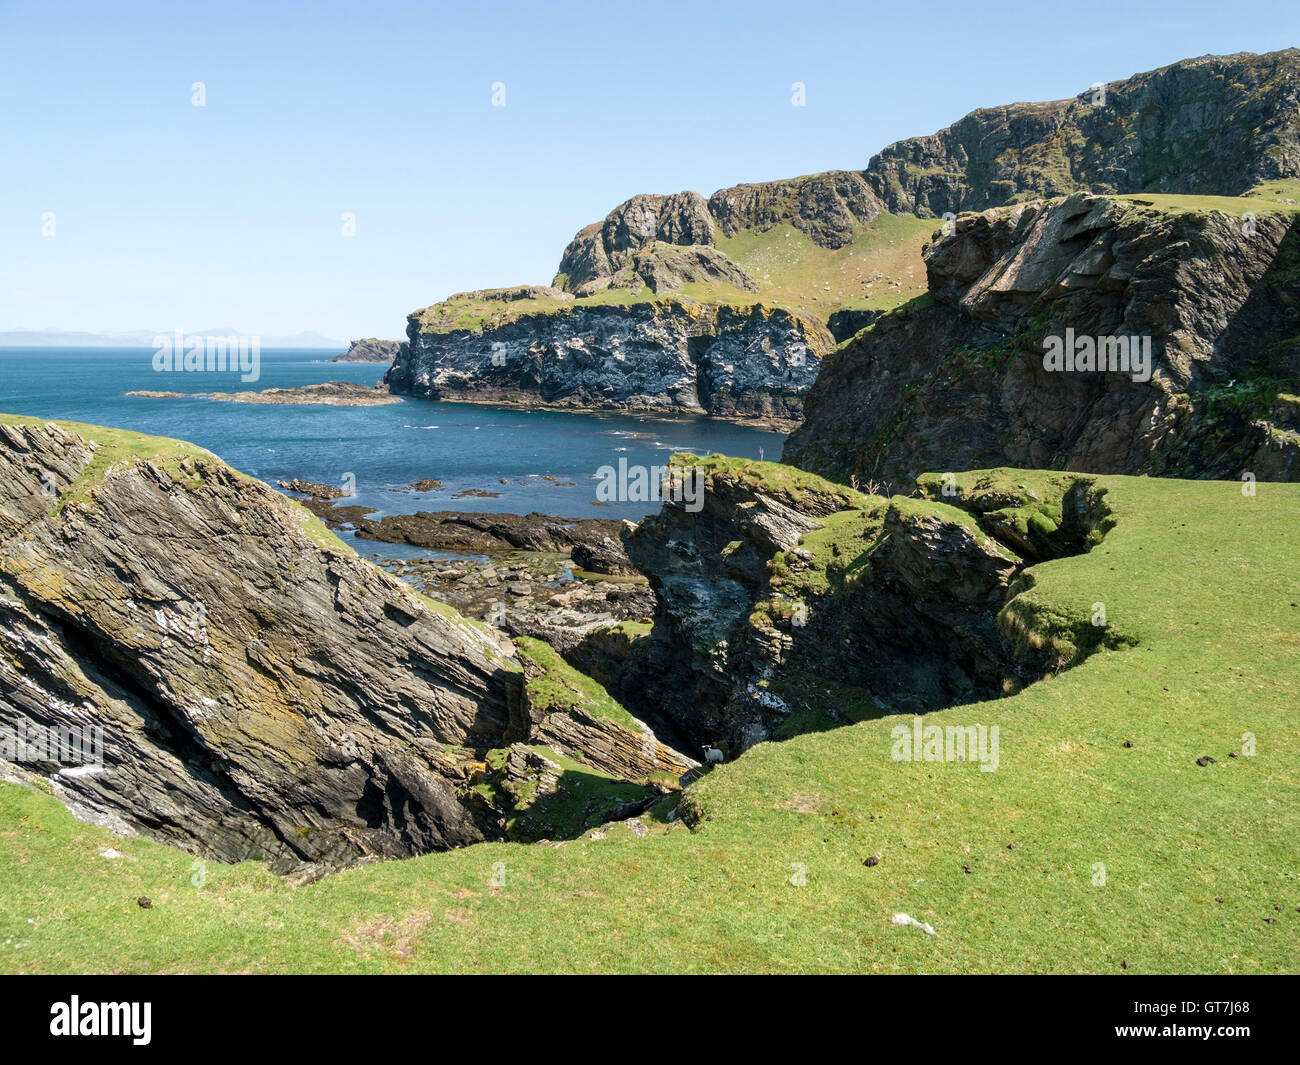 Oiseaux de mer et falaises rocheuses à l'interdiction du port près de Pig's Paradise à l'île de Colonsay, Ecosse, Royaume-Uni. Banque D'Images